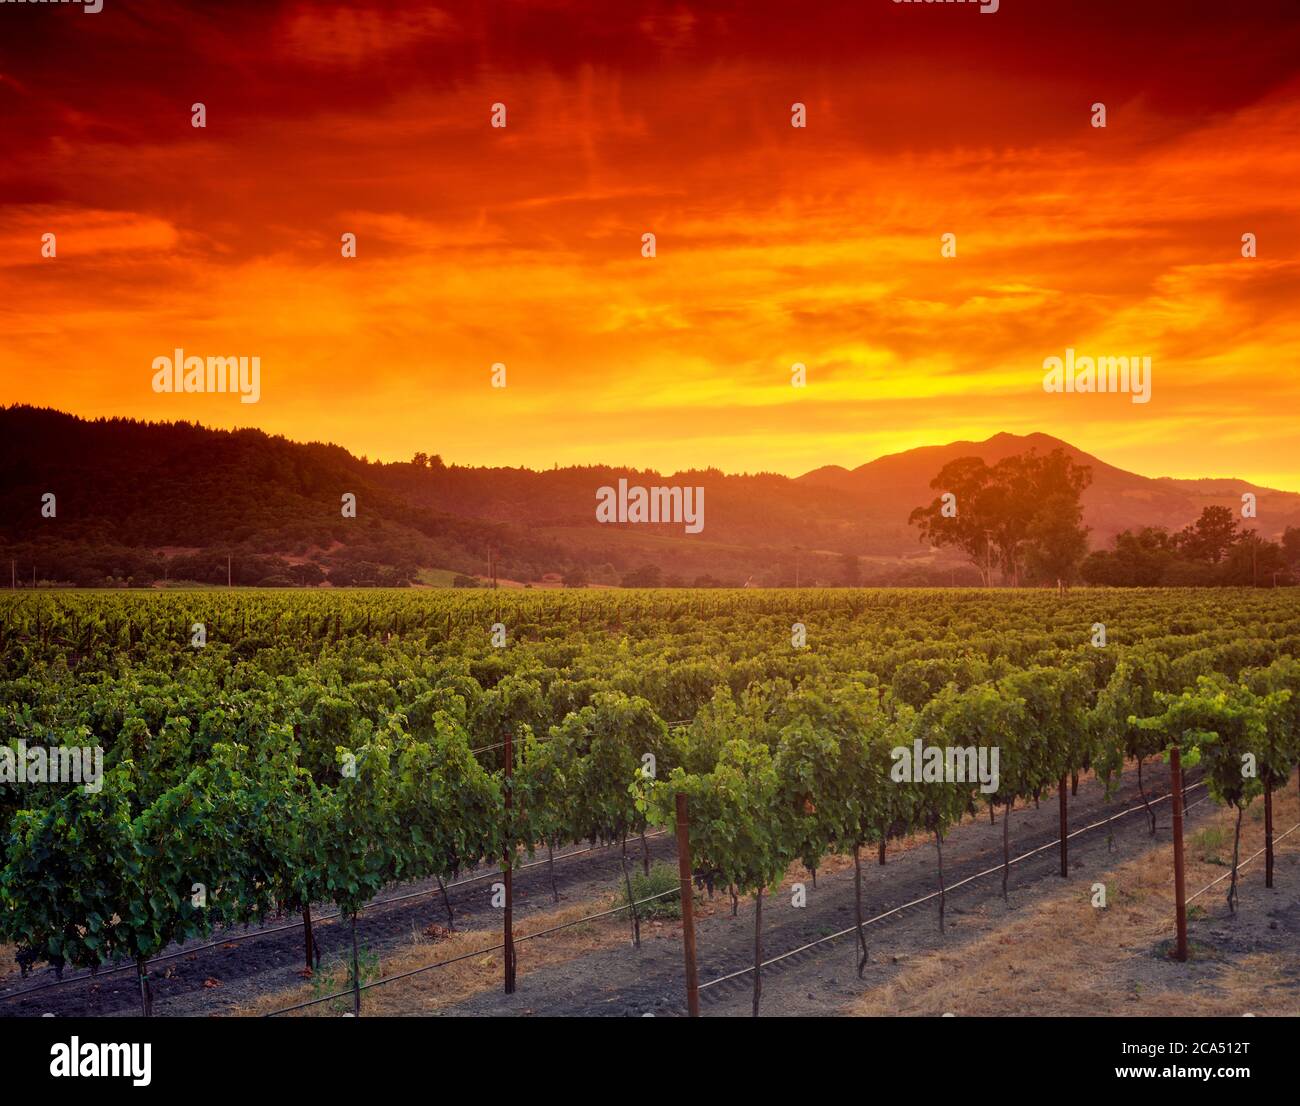 Viñedo al atardecer rojo y ardiente, Napa Valley, California, Estados Unidos Foto de stock